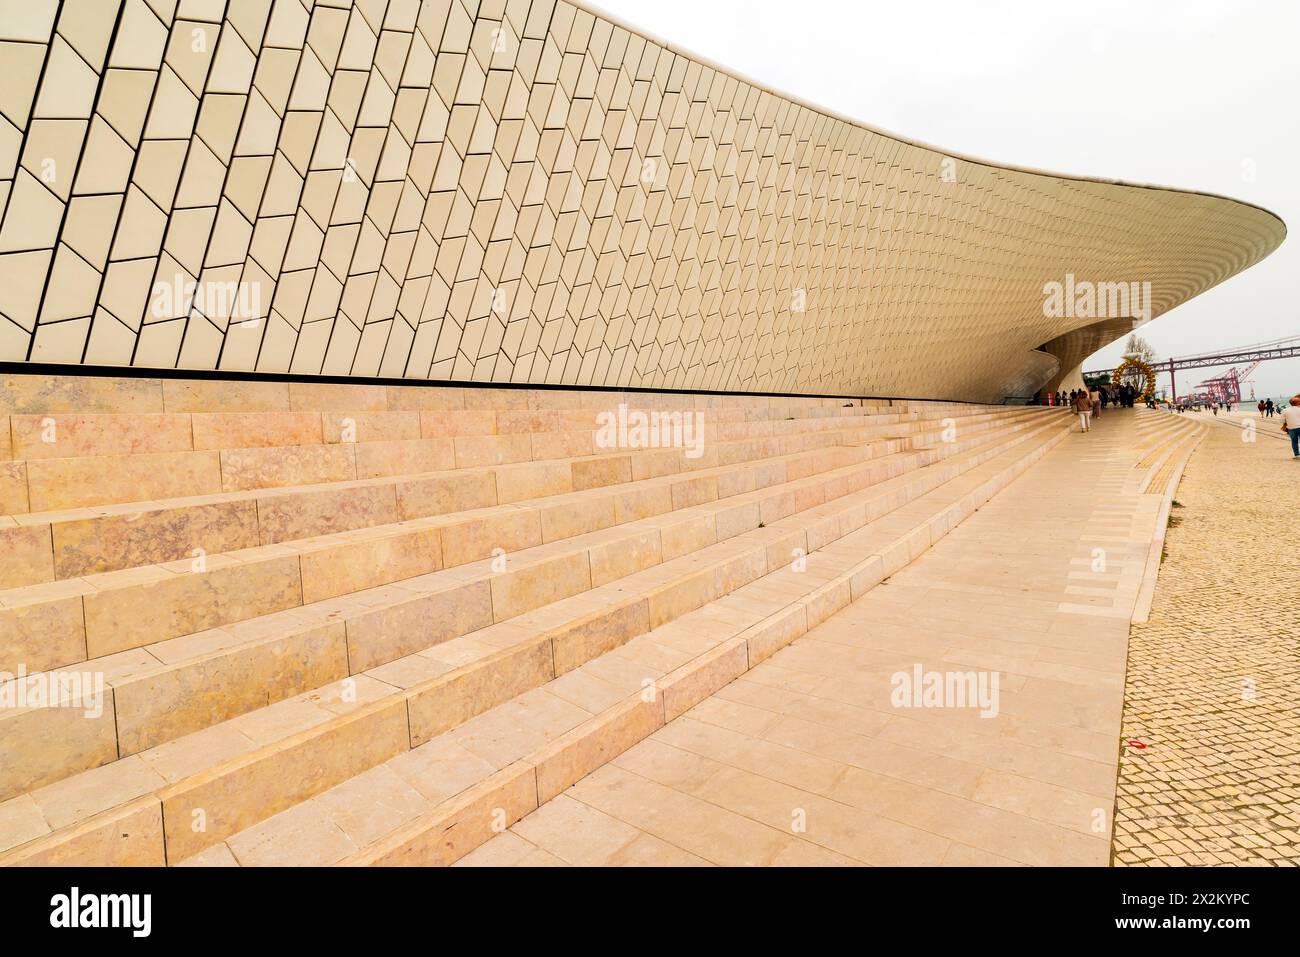 Il museo Maat o il Museo d'Arte, architettura e tecnologia di Lisbona. Il museo è stato progettato da Amanda Levete Architects e si trova a Belém, L Foto Stock